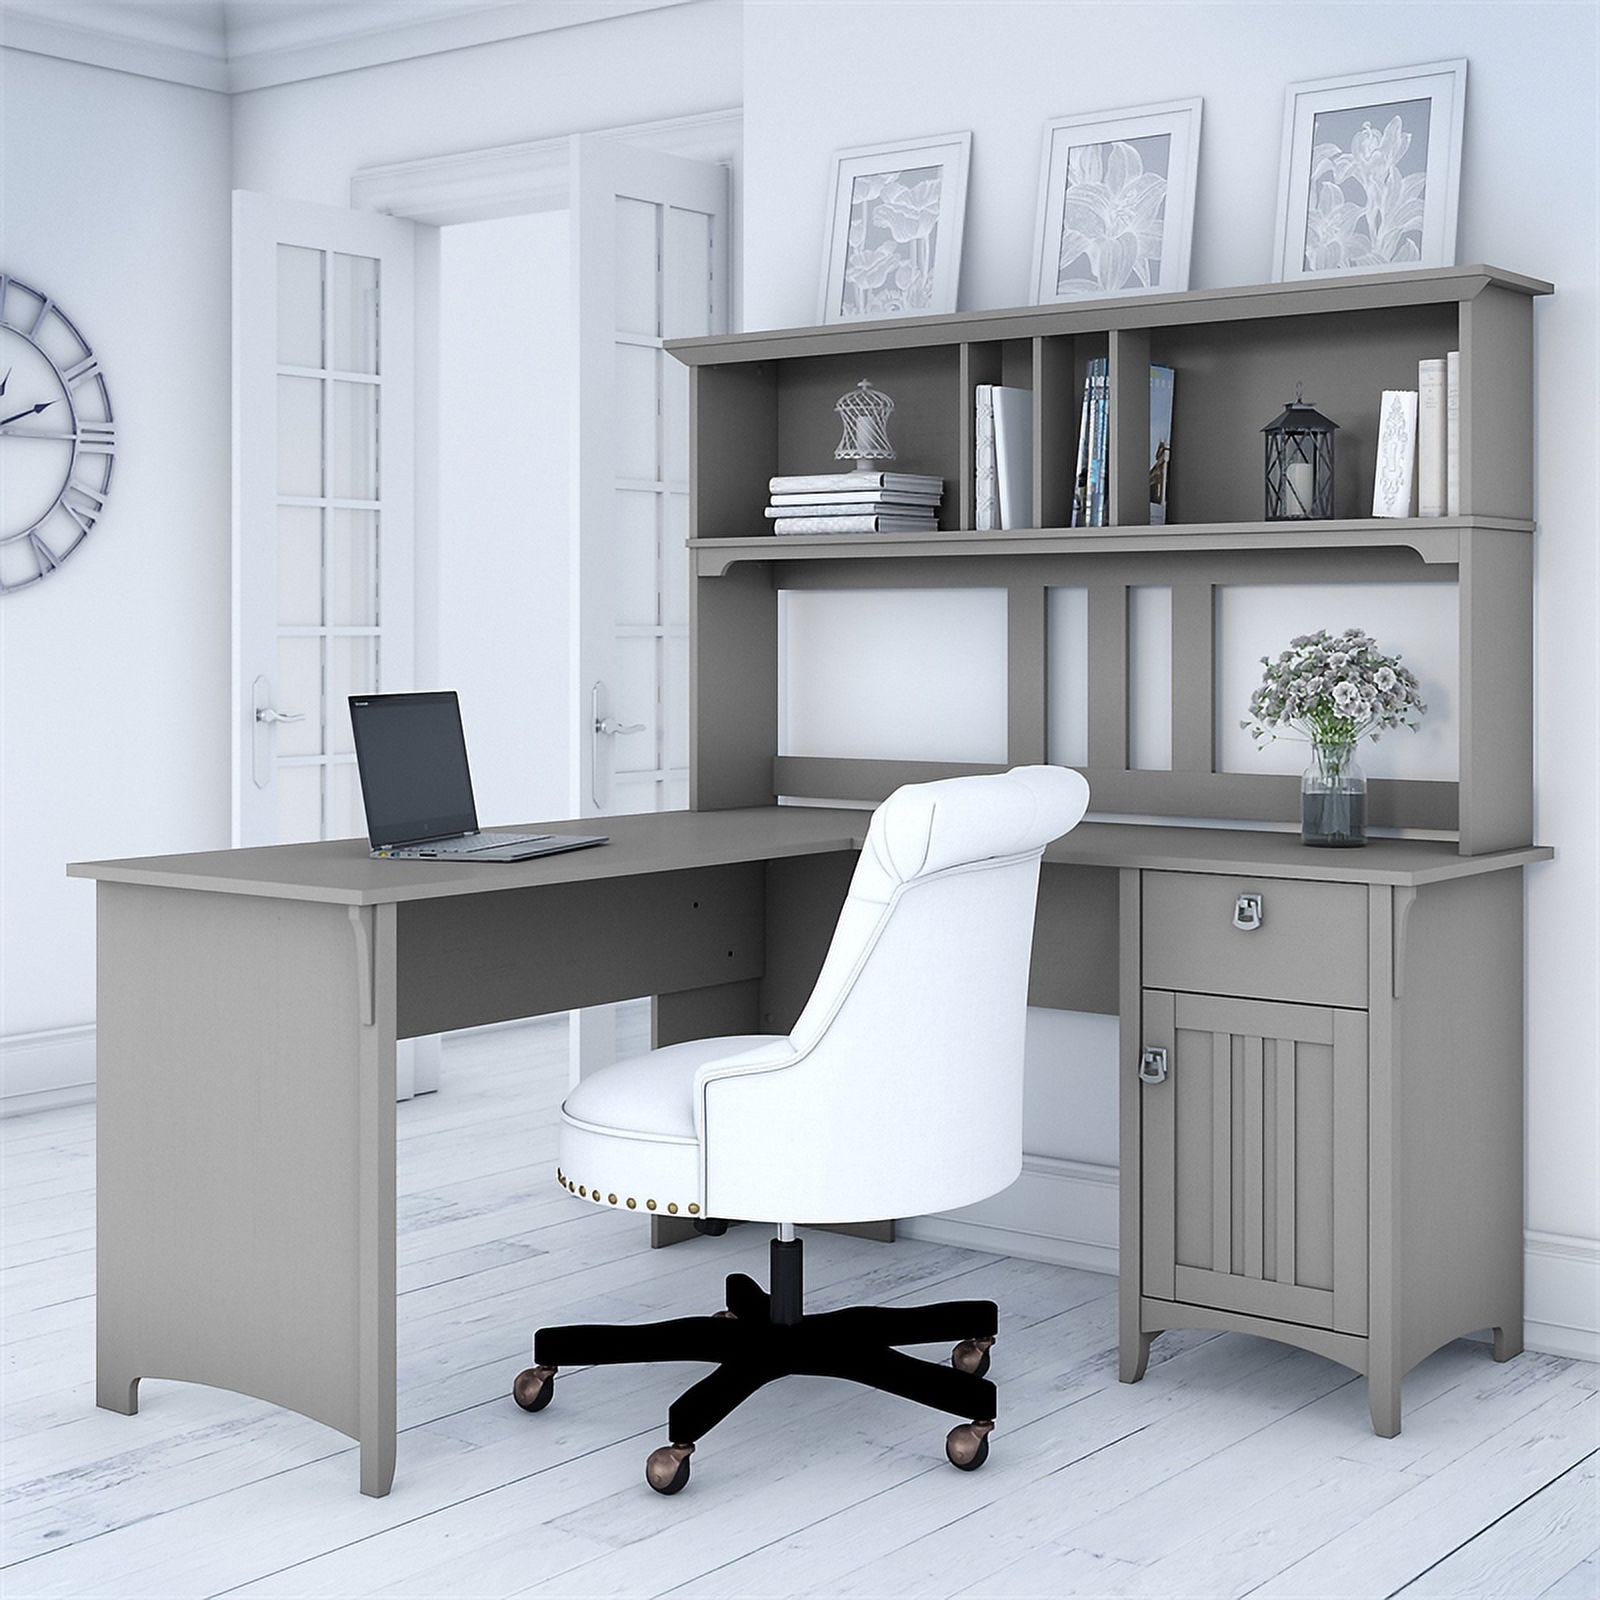 Scranton & Co Furniture Salinas 60W L Shaped Desk with Hutch in Cape Cod Gray - image 2 of 7